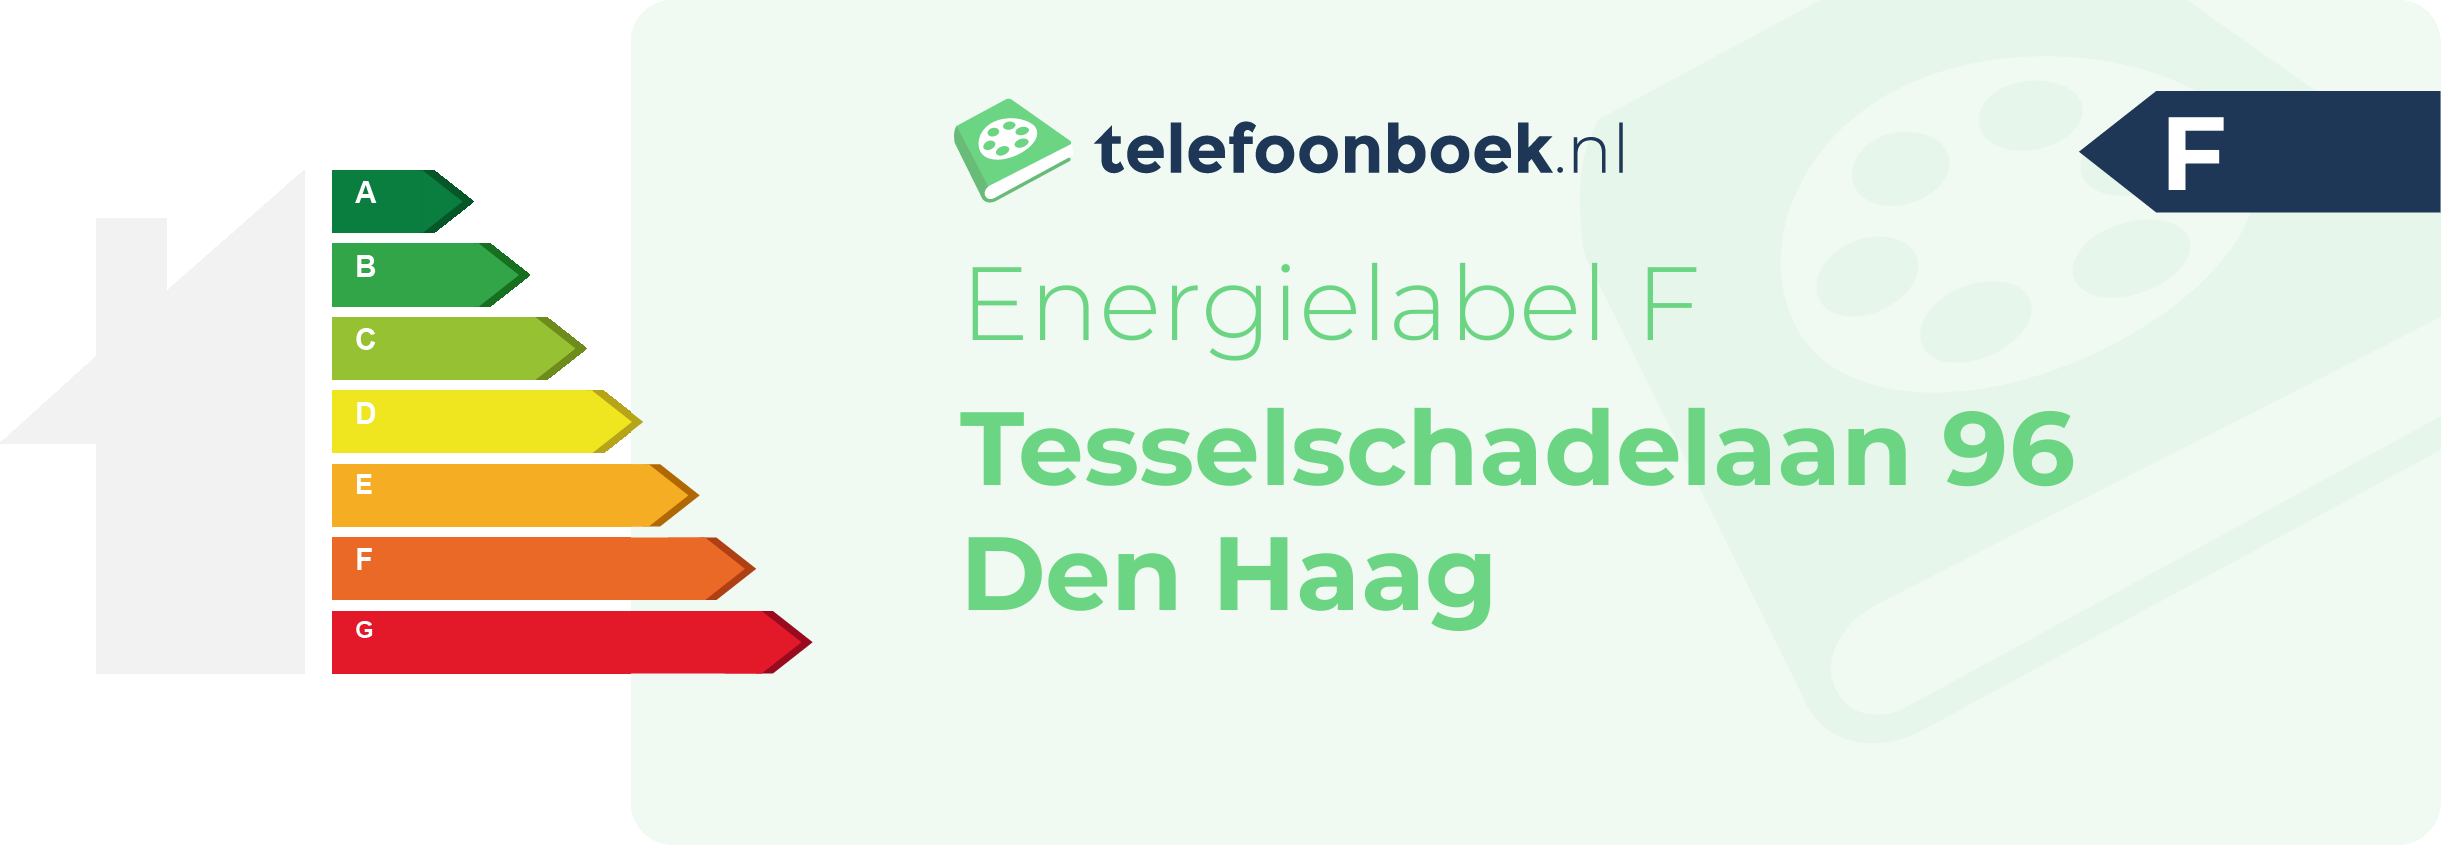 Energielabel Tesselschadelaan 96 Den Haag